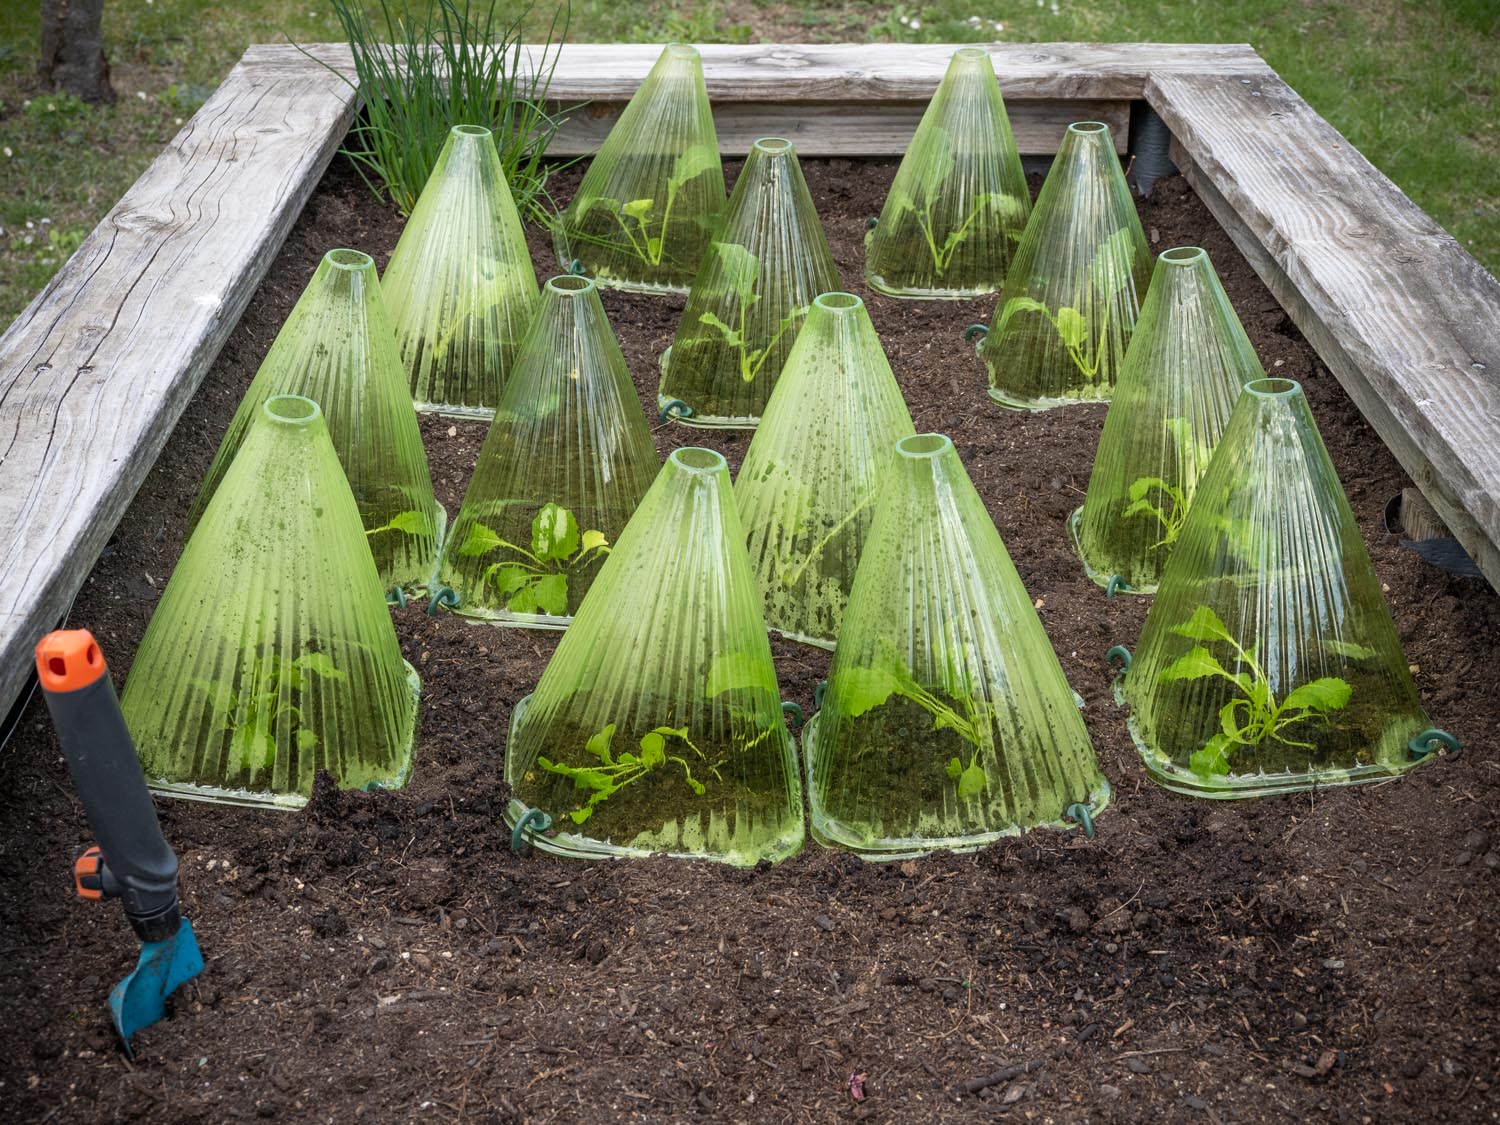 Plastikhütchen schützen die Pflanzen vor tiefen Temperaturen